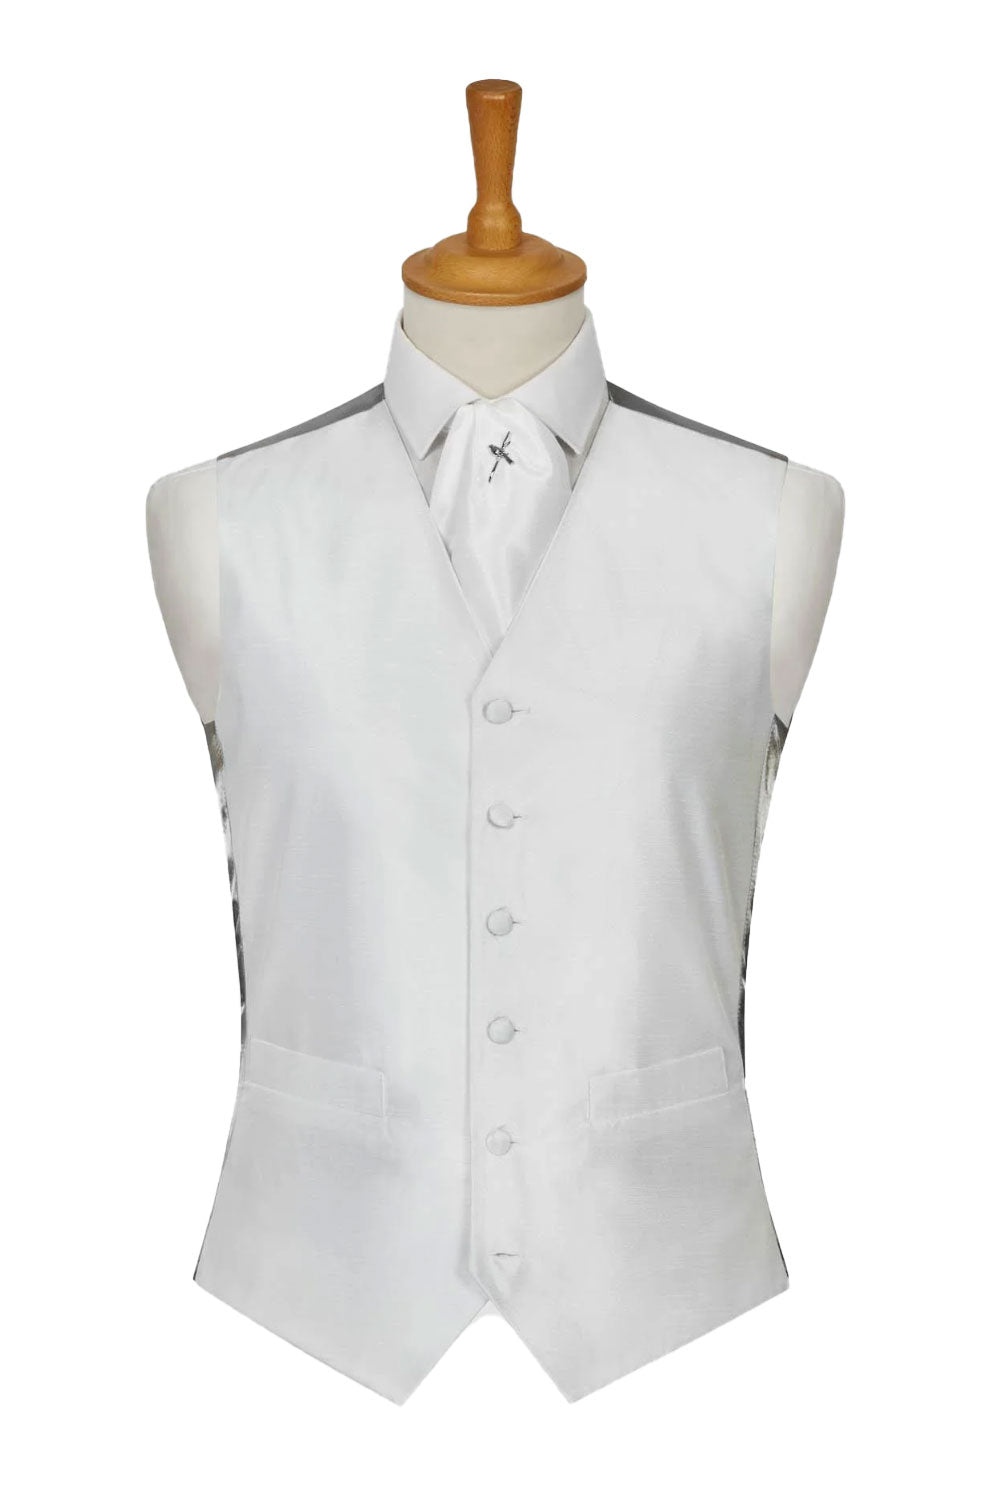 White Wedding Waistcoat - Brand New